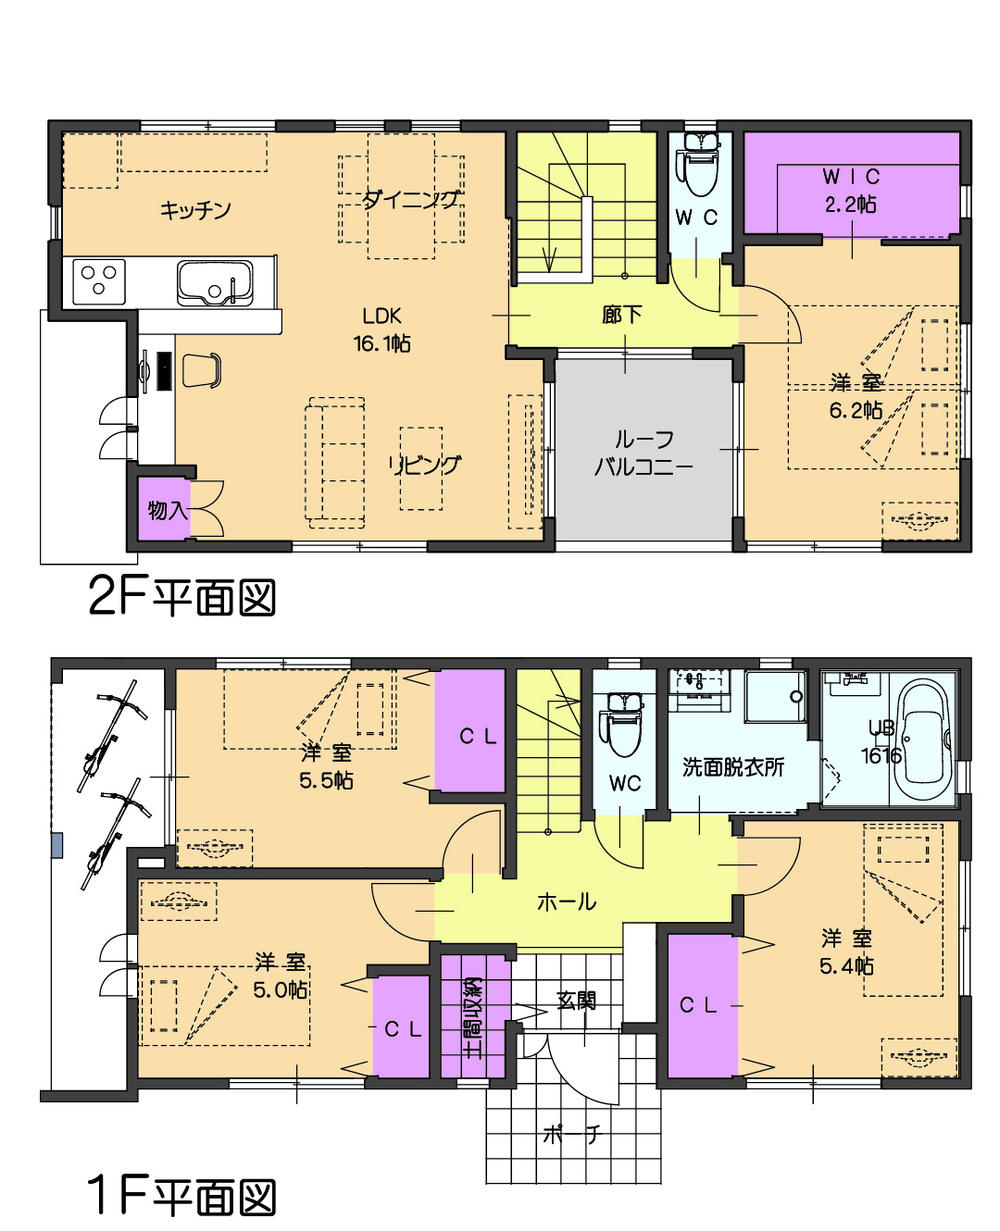 Floor plan. 27,800,000 yen, 4LDK, Land area 131.52 sq m , Building area 100.92 sq m 2 Building